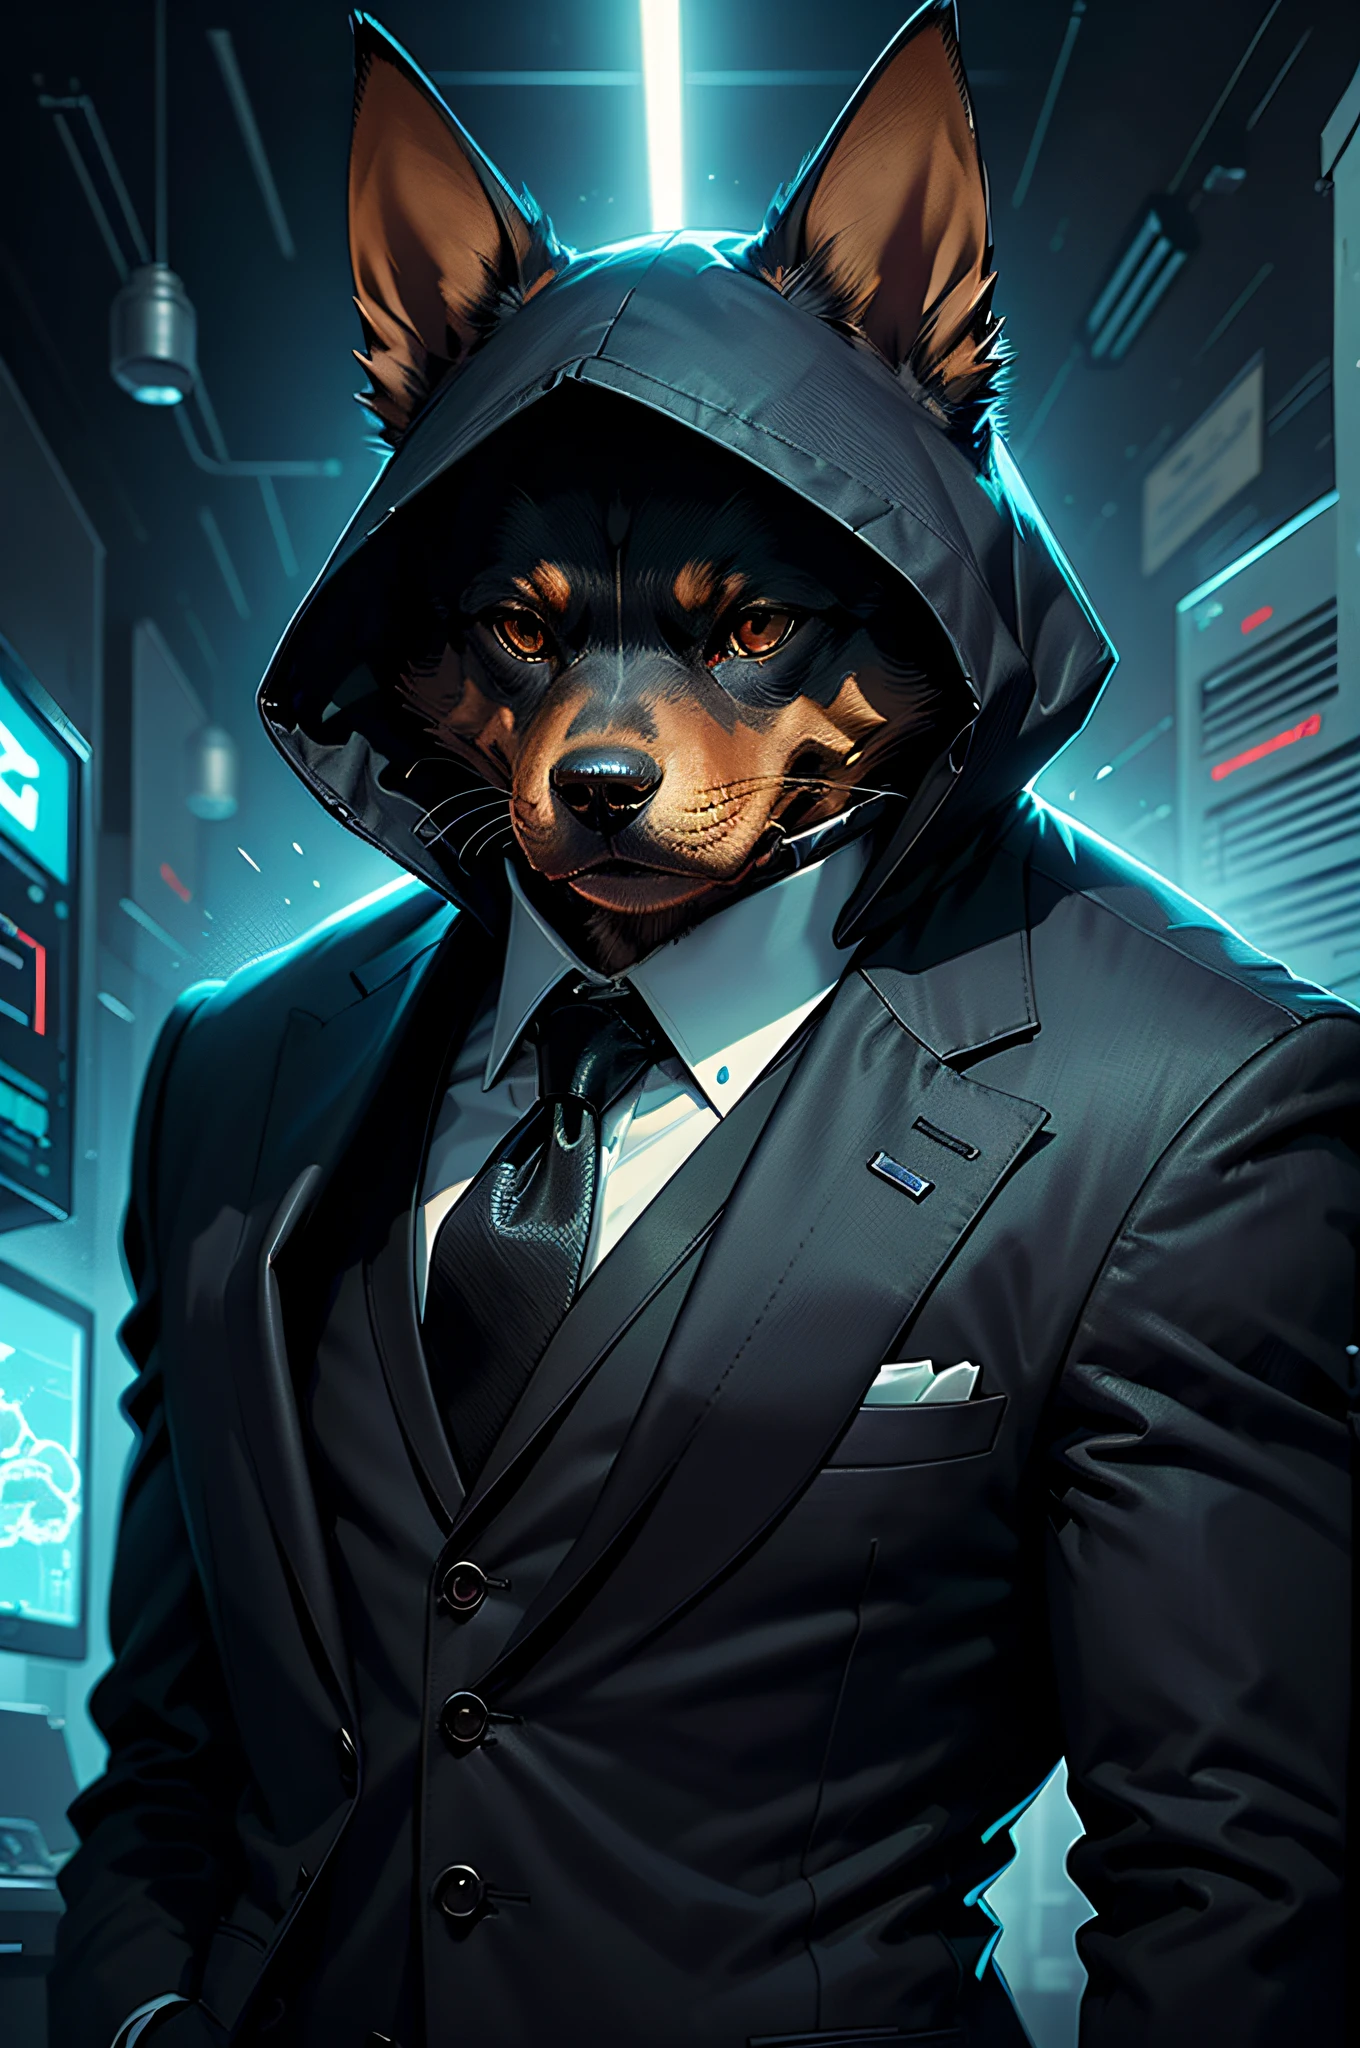 (رجل يرتدي بدلة سوداء وربطة عنق)شريط فكاهي、كلب الدوبرمان المجسم、cyberpunk